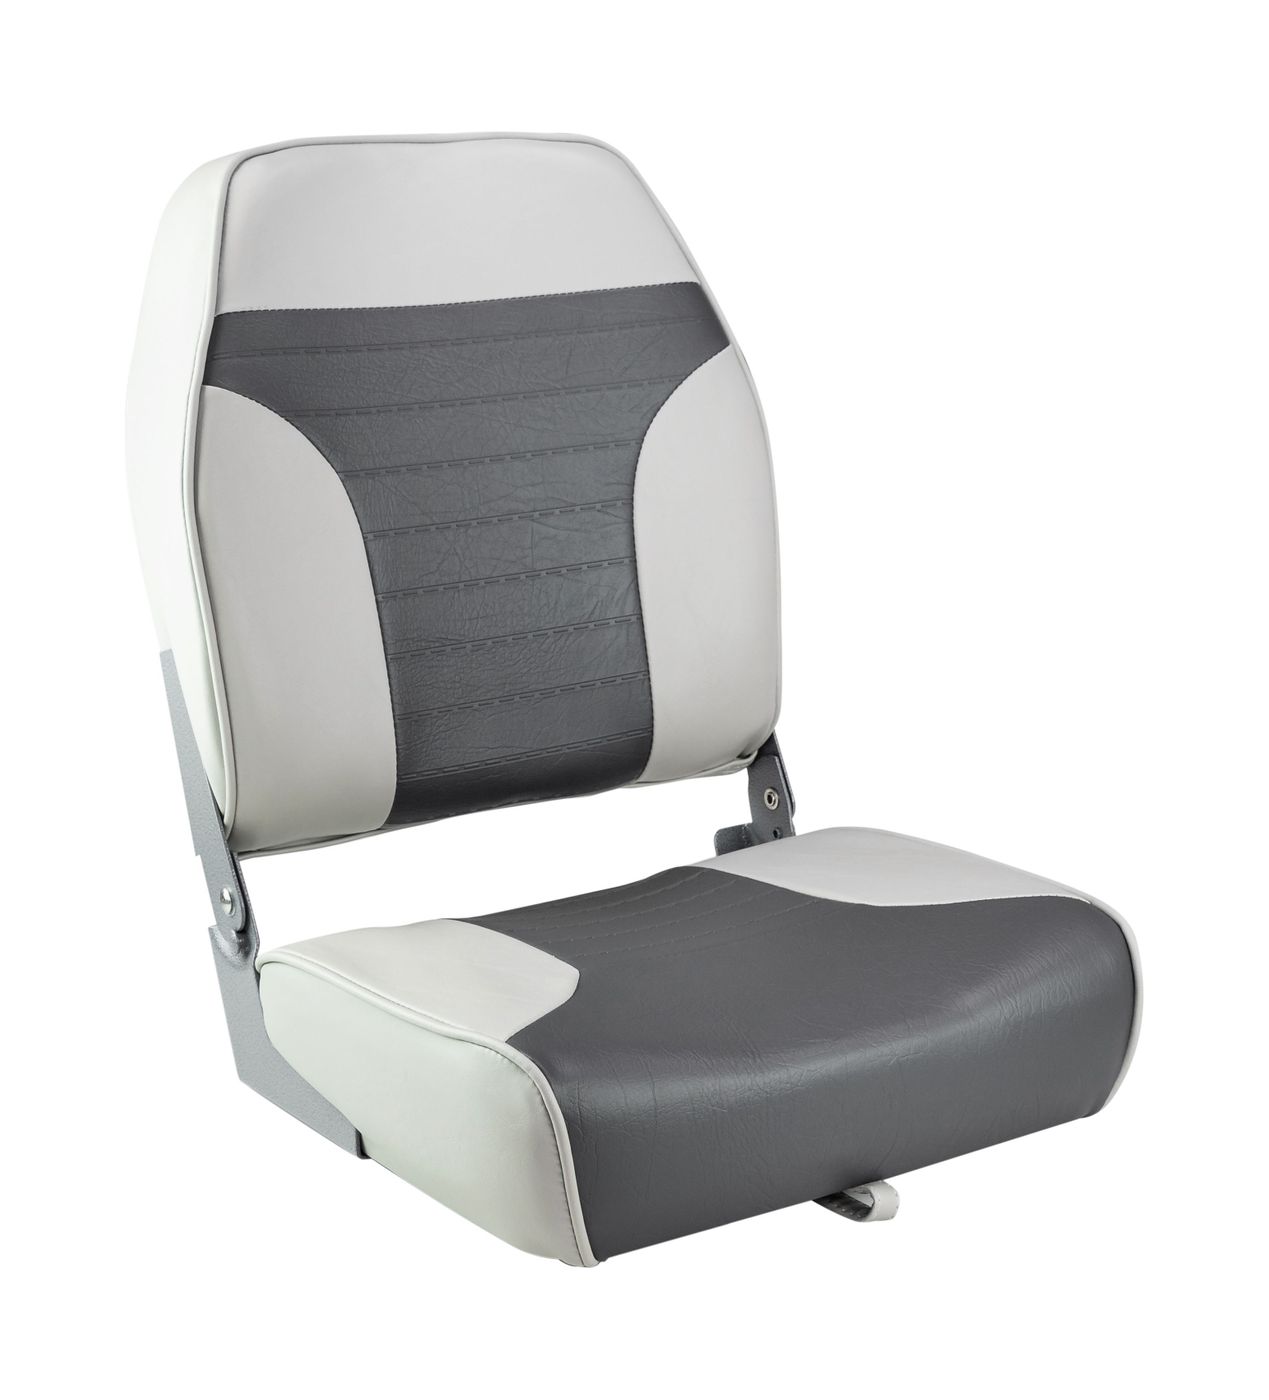 Кресло складное мягкое ECONOMY с высокой спинкой, цвет серый/темно-серый 1040663 кресло складное мягкое skipper серый темно серый 1061017